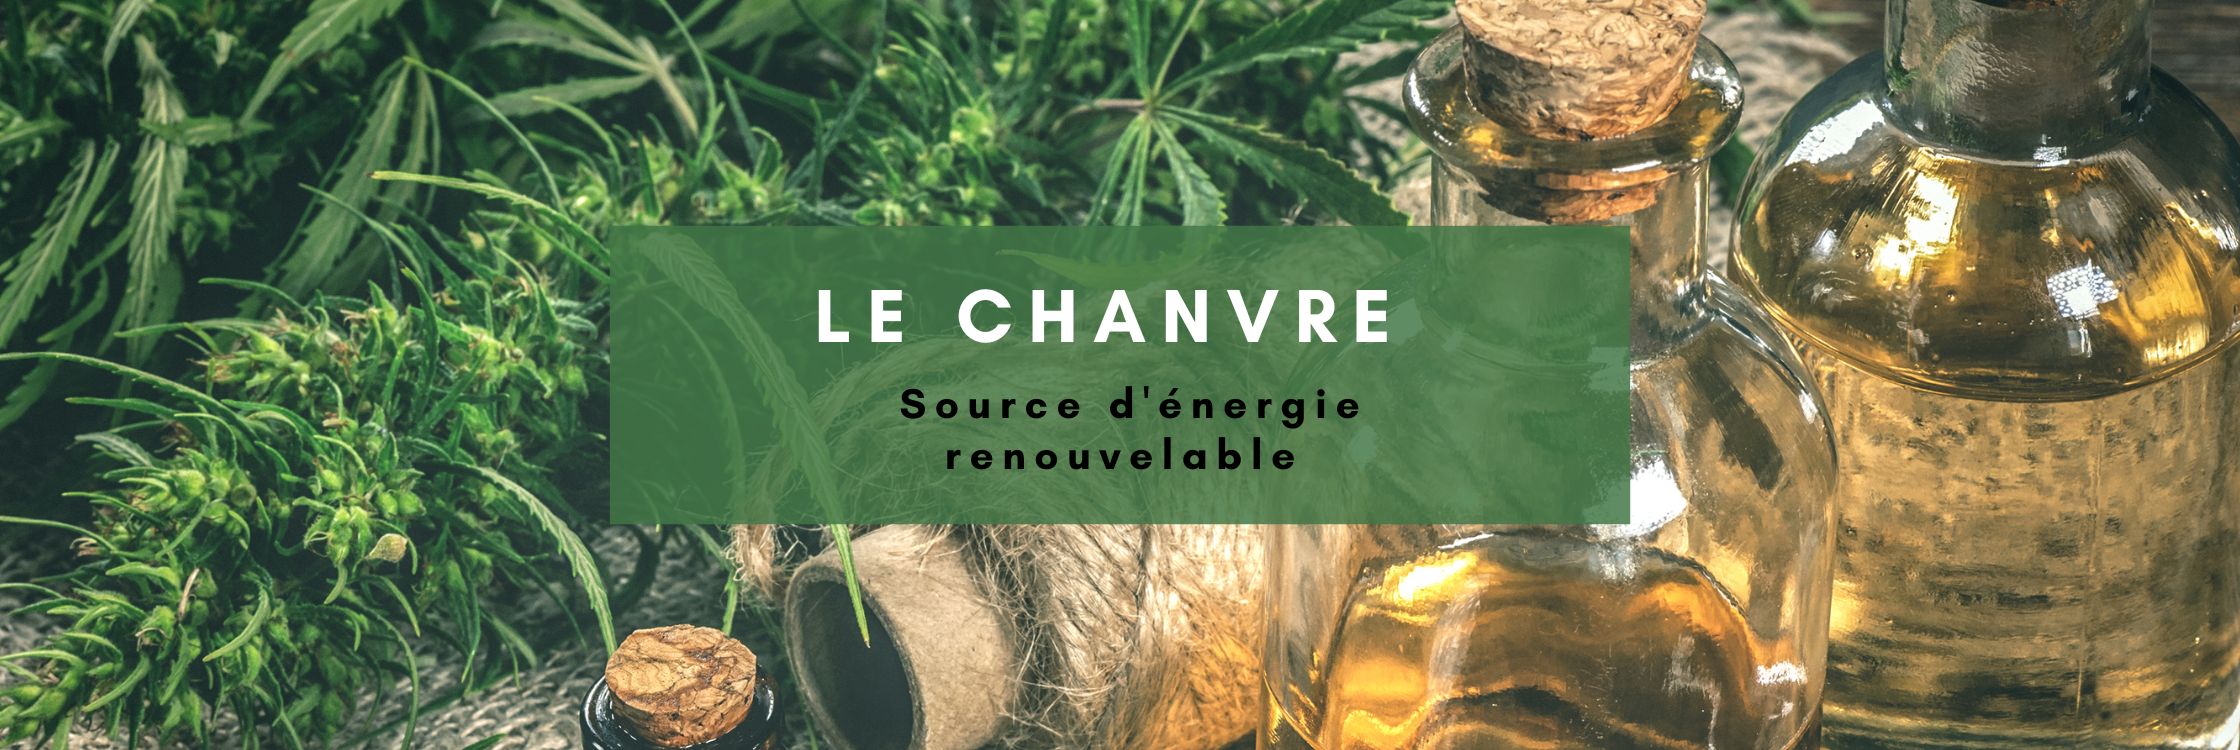 Le Chanvre : Source d'énergie renouvelable